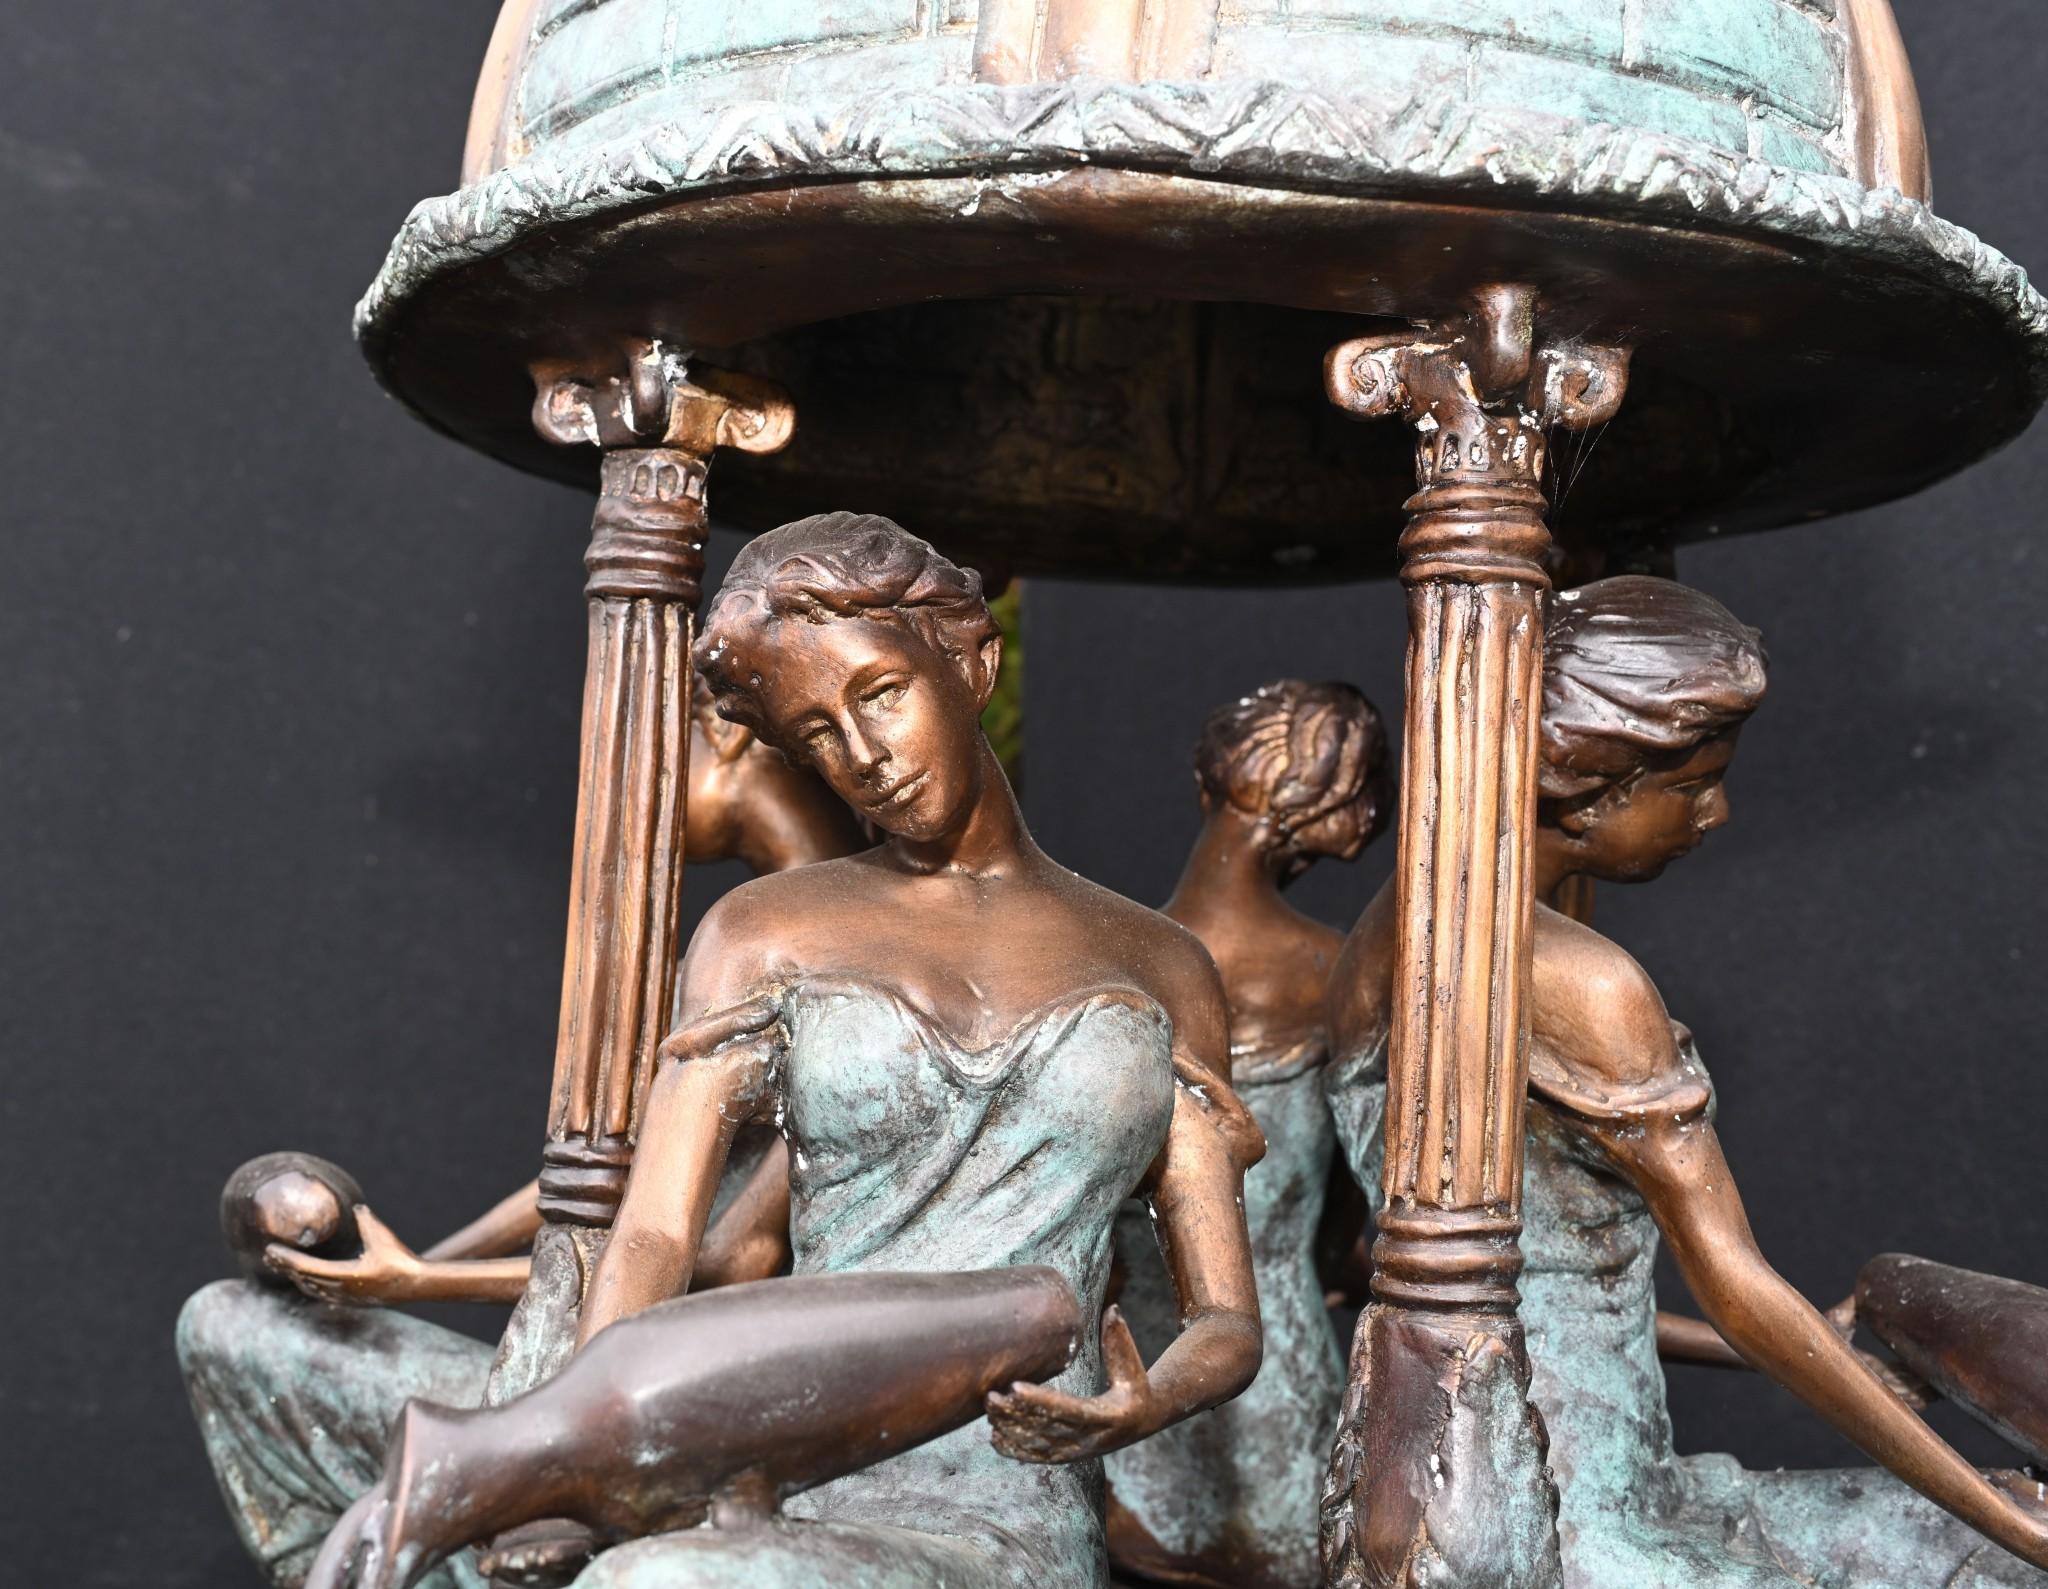 Wunderschöner großer italienischer Bronzebrunnen mit Jungfrauen und Musen
Das Stück ist fast 8 Fuß hoch - 238 CM so gute Größe
Die zentrale Säule wird von den vier in Toga gekleideten klassischen Jungfrauen getragen
Dann haben wir die Hauptschale